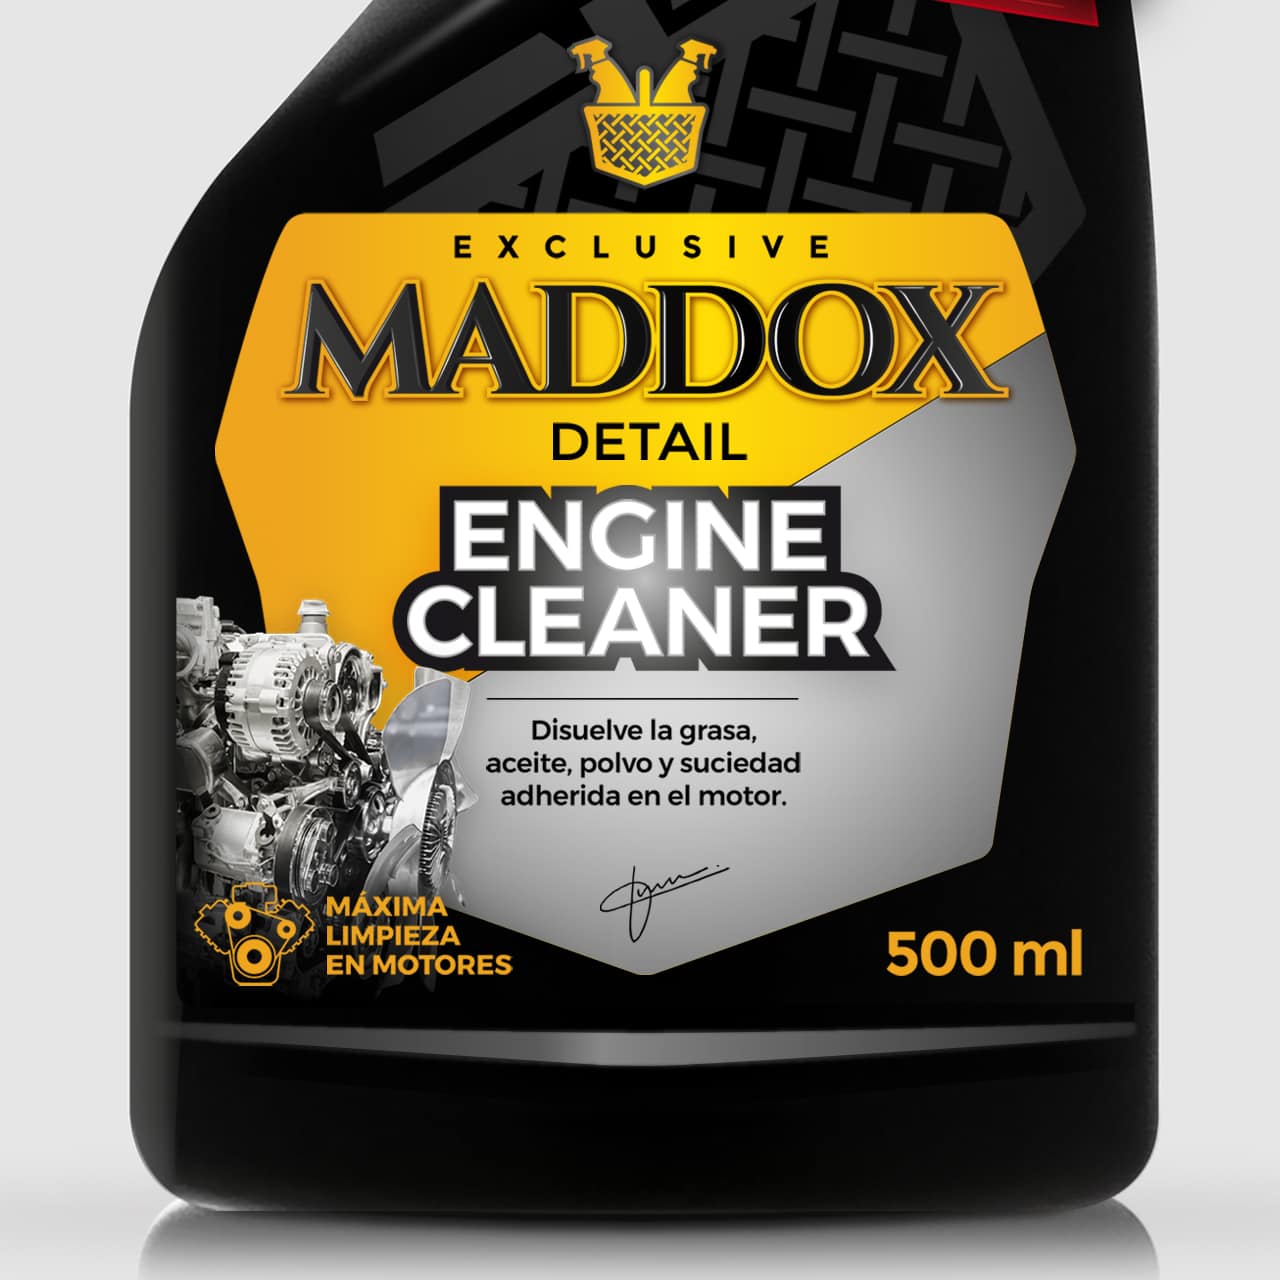 Maddox Detail  Car detailing – La marca experta en productos de limpieza y  cuidado para coche y moto.